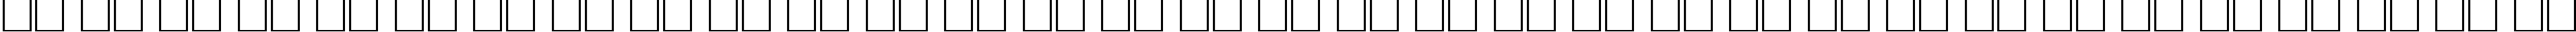 Пример написания русского алфавита шрифтом AGOpus